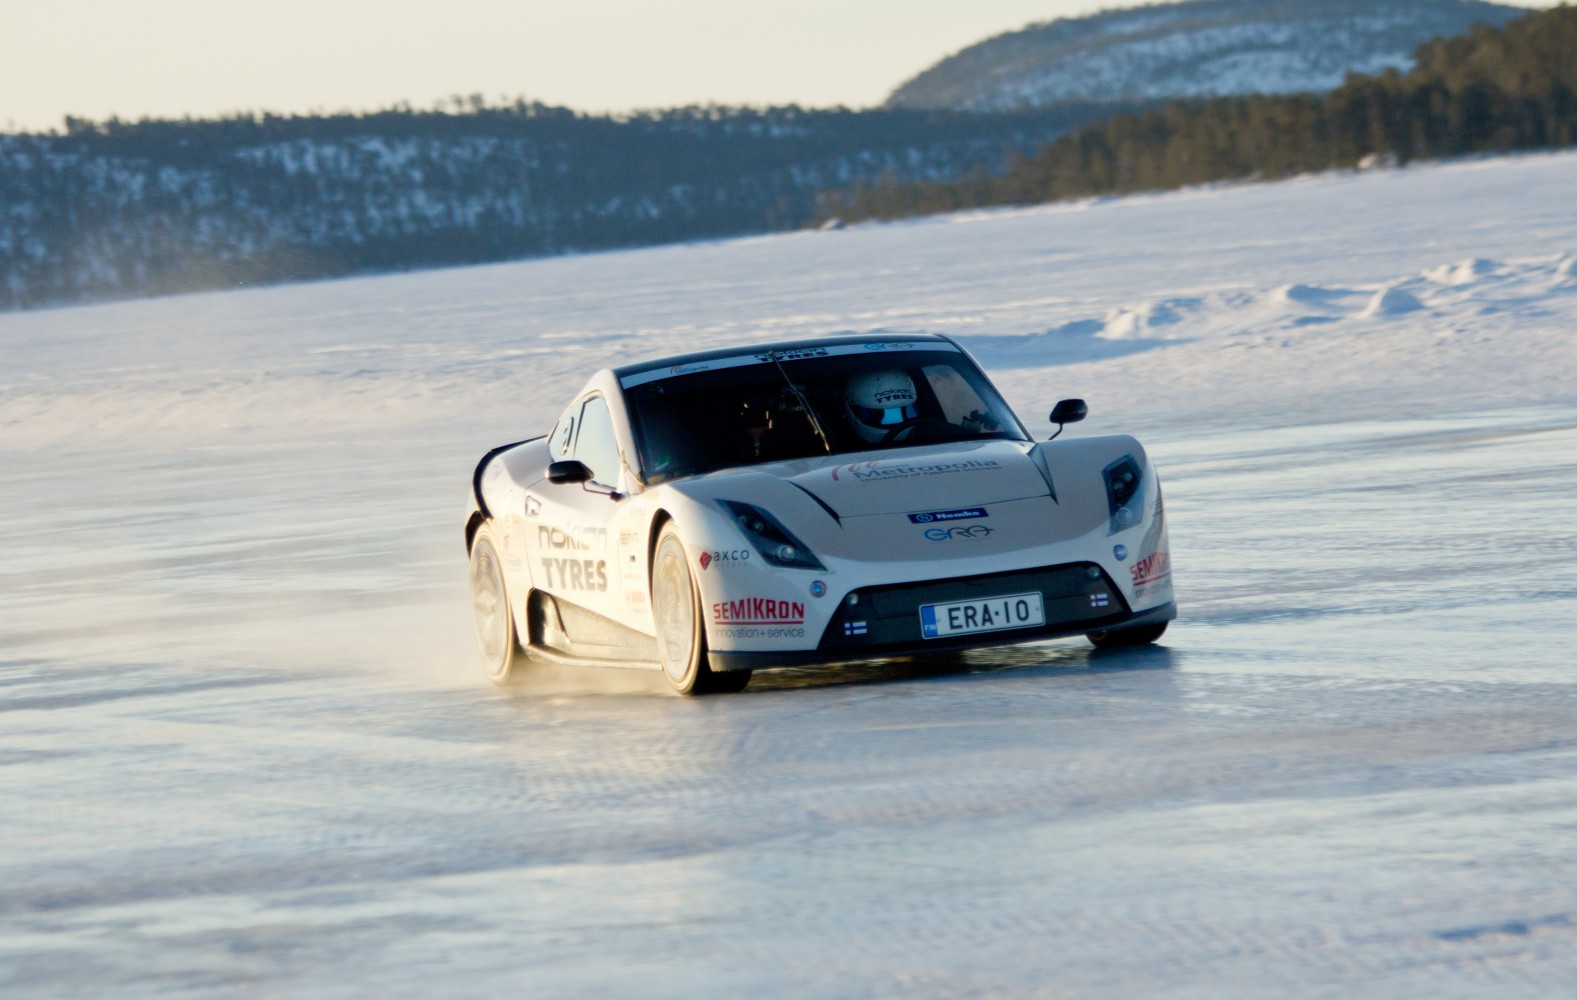 Айс скорость. Электрокар Electric Raceabout. Машина для езды по снегу. Машины на льду красивые. Рекорд скорости на льду.